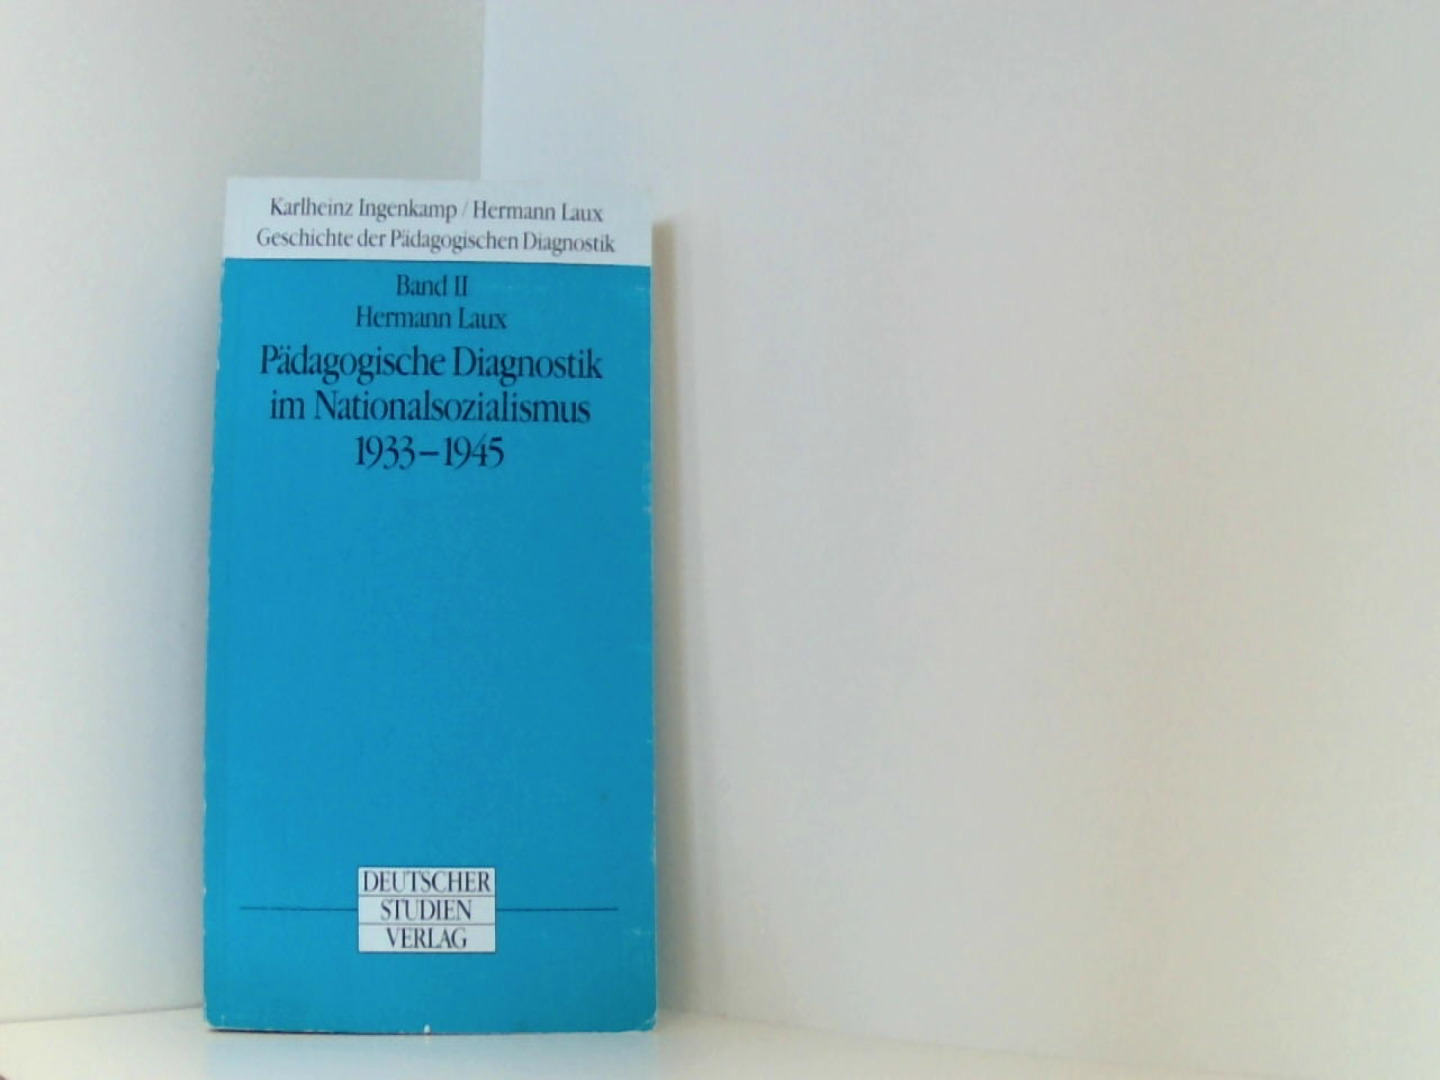 Geschichte der Pädagogischen Diagnostik, in 2 Bdn., Bd.2 : Pädagogische Diagnostik im Nationalsozialismus 1933-1945 - Laux, Hermann